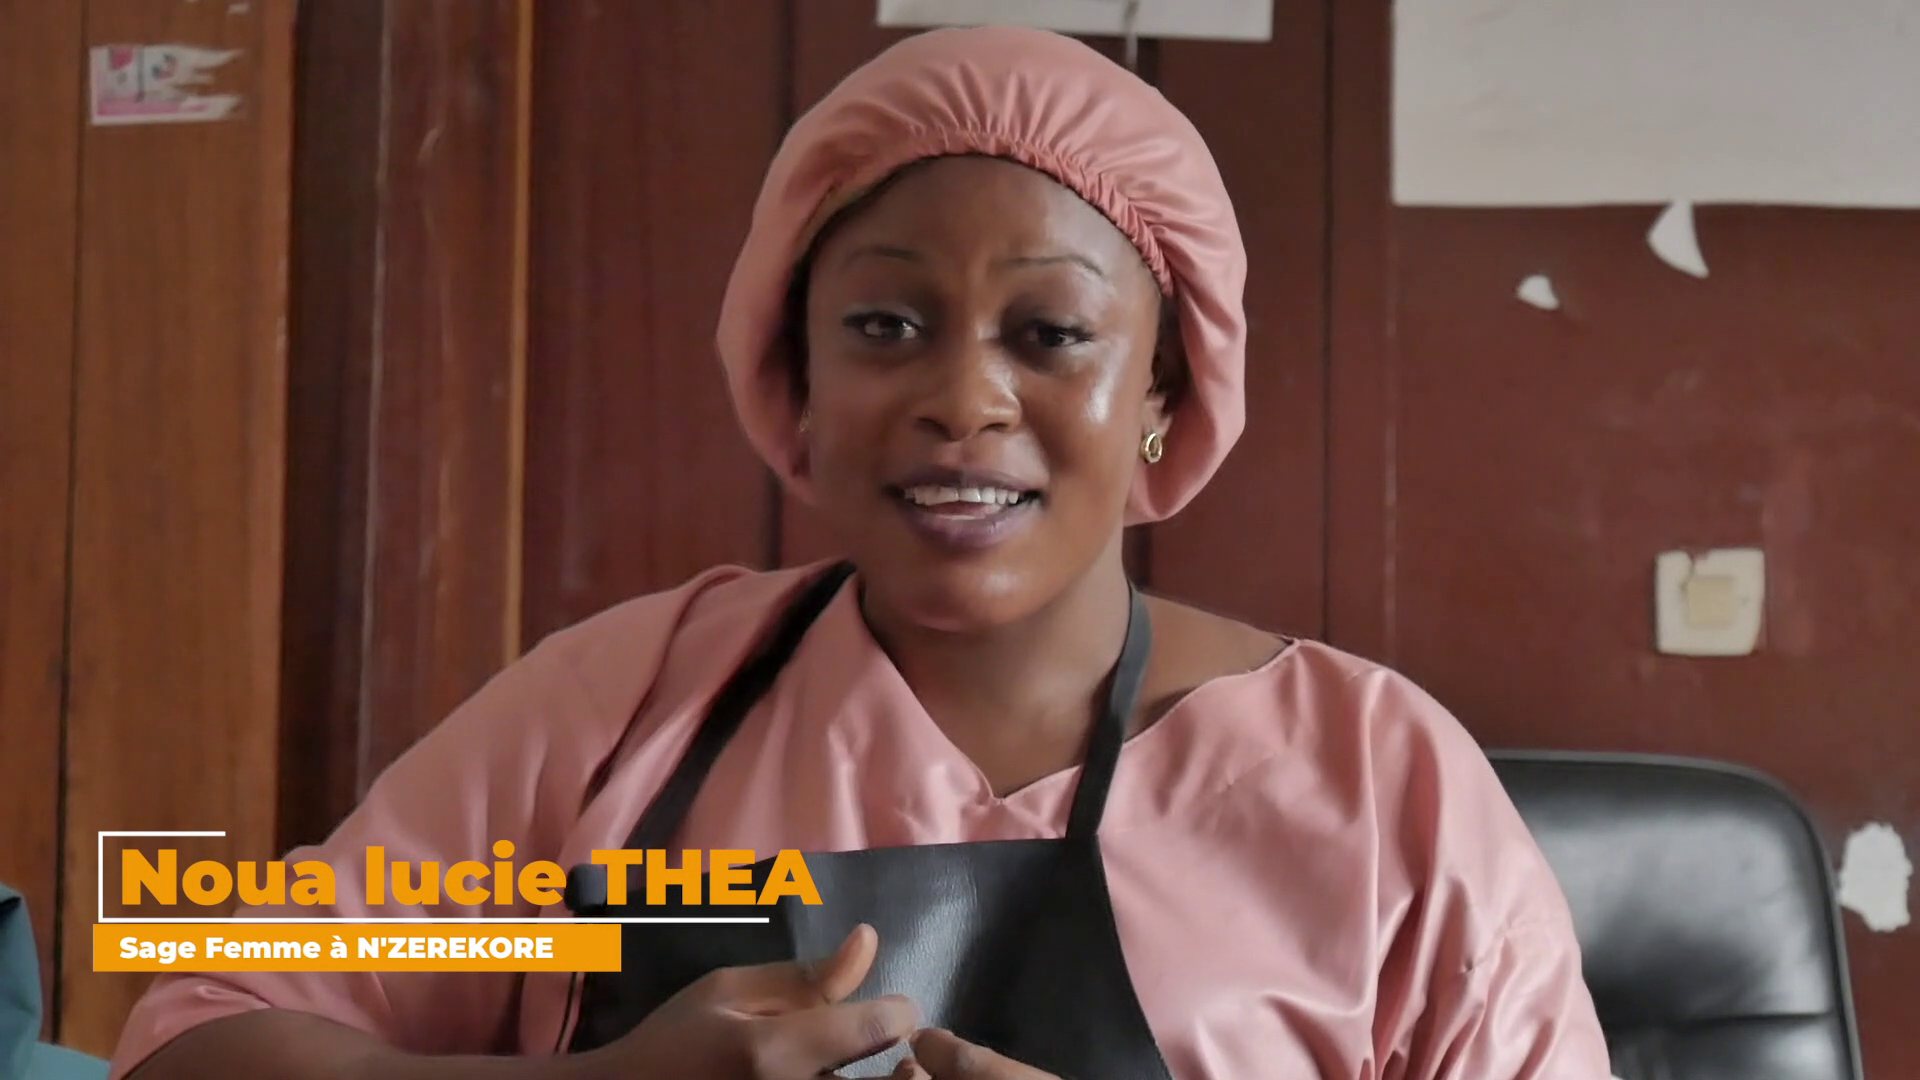 Noua Lucie Théa sage-femme à l’Hôpital Régionale de N’Zérékoré s’engage pour la continuité des services de santé maternelle